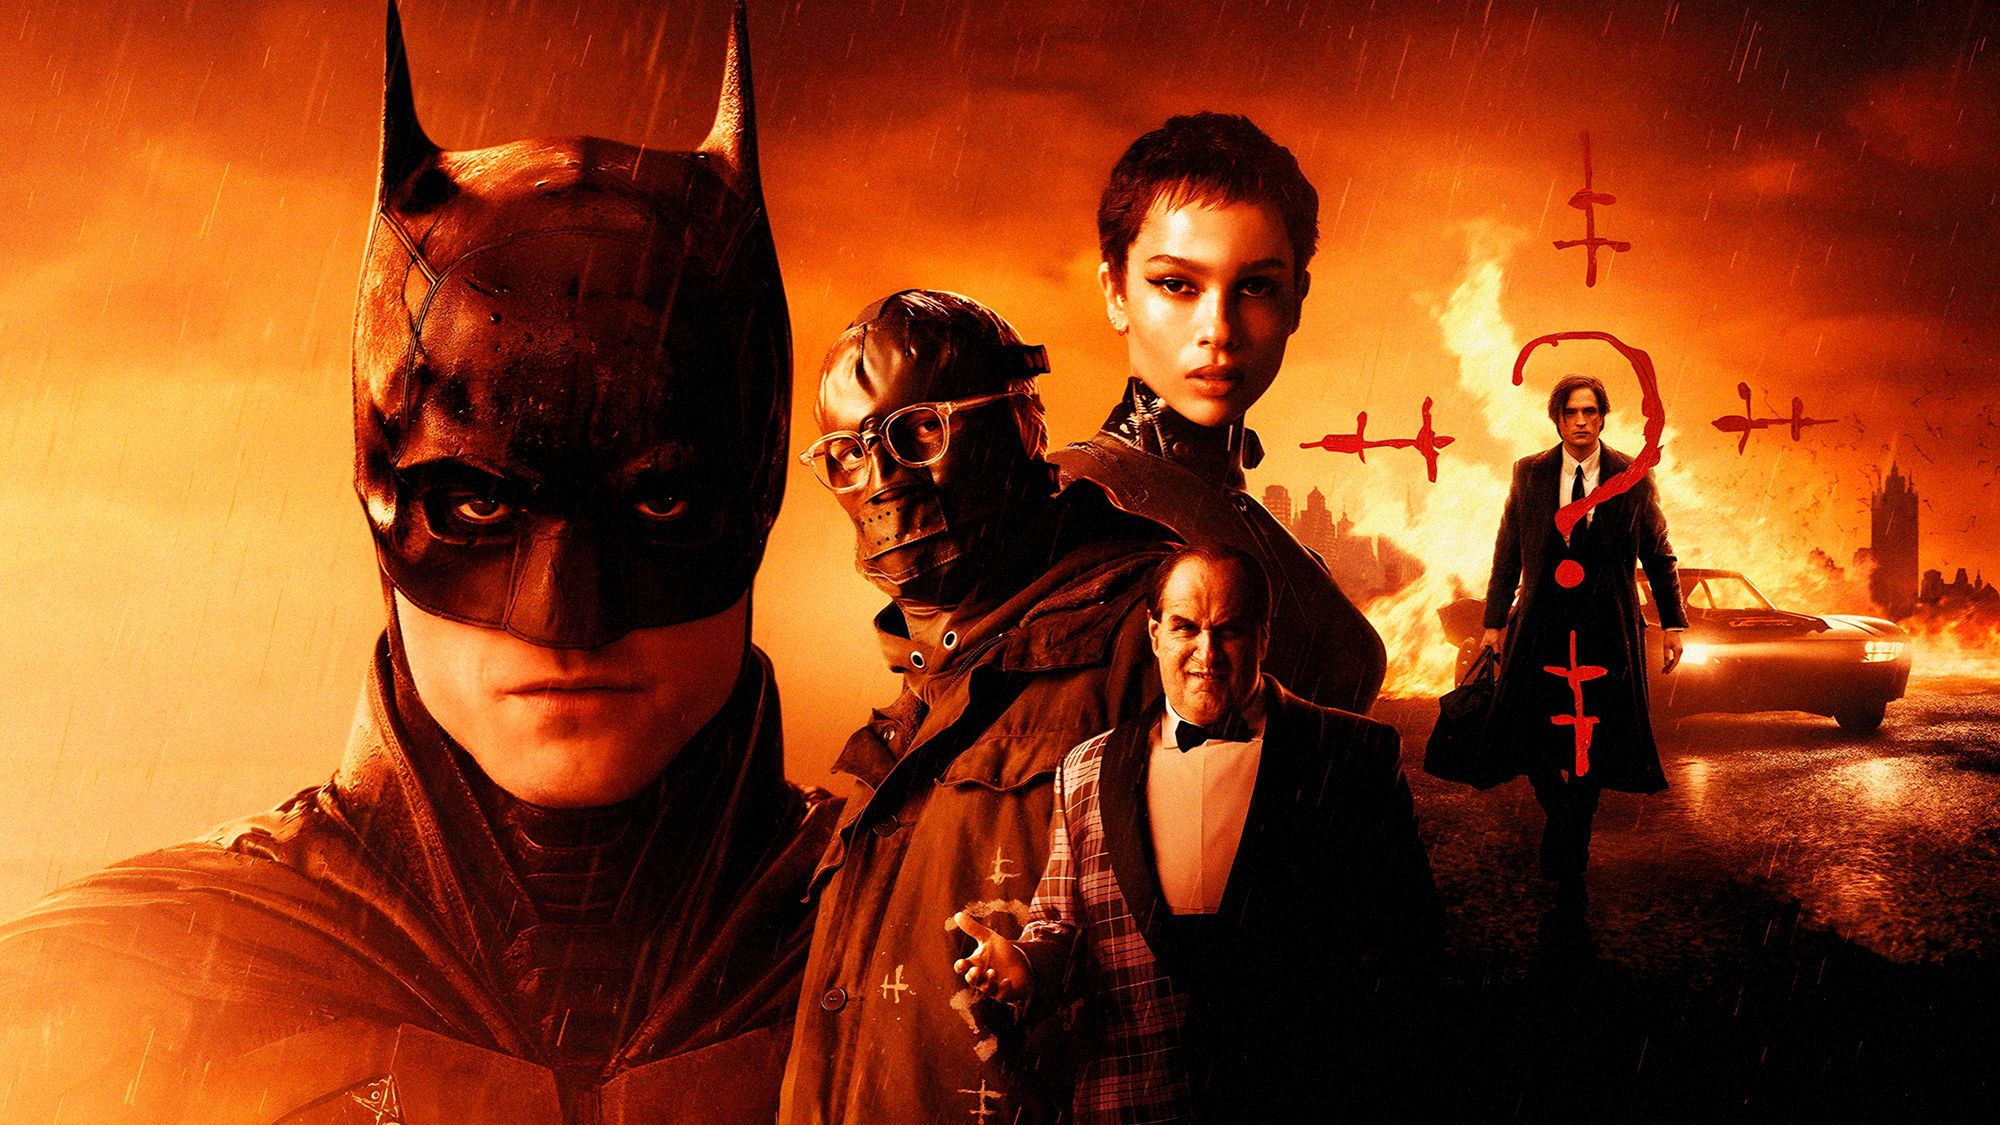 The Batman 2': Fecha de estreno, reparto, sinopsis, trailer…